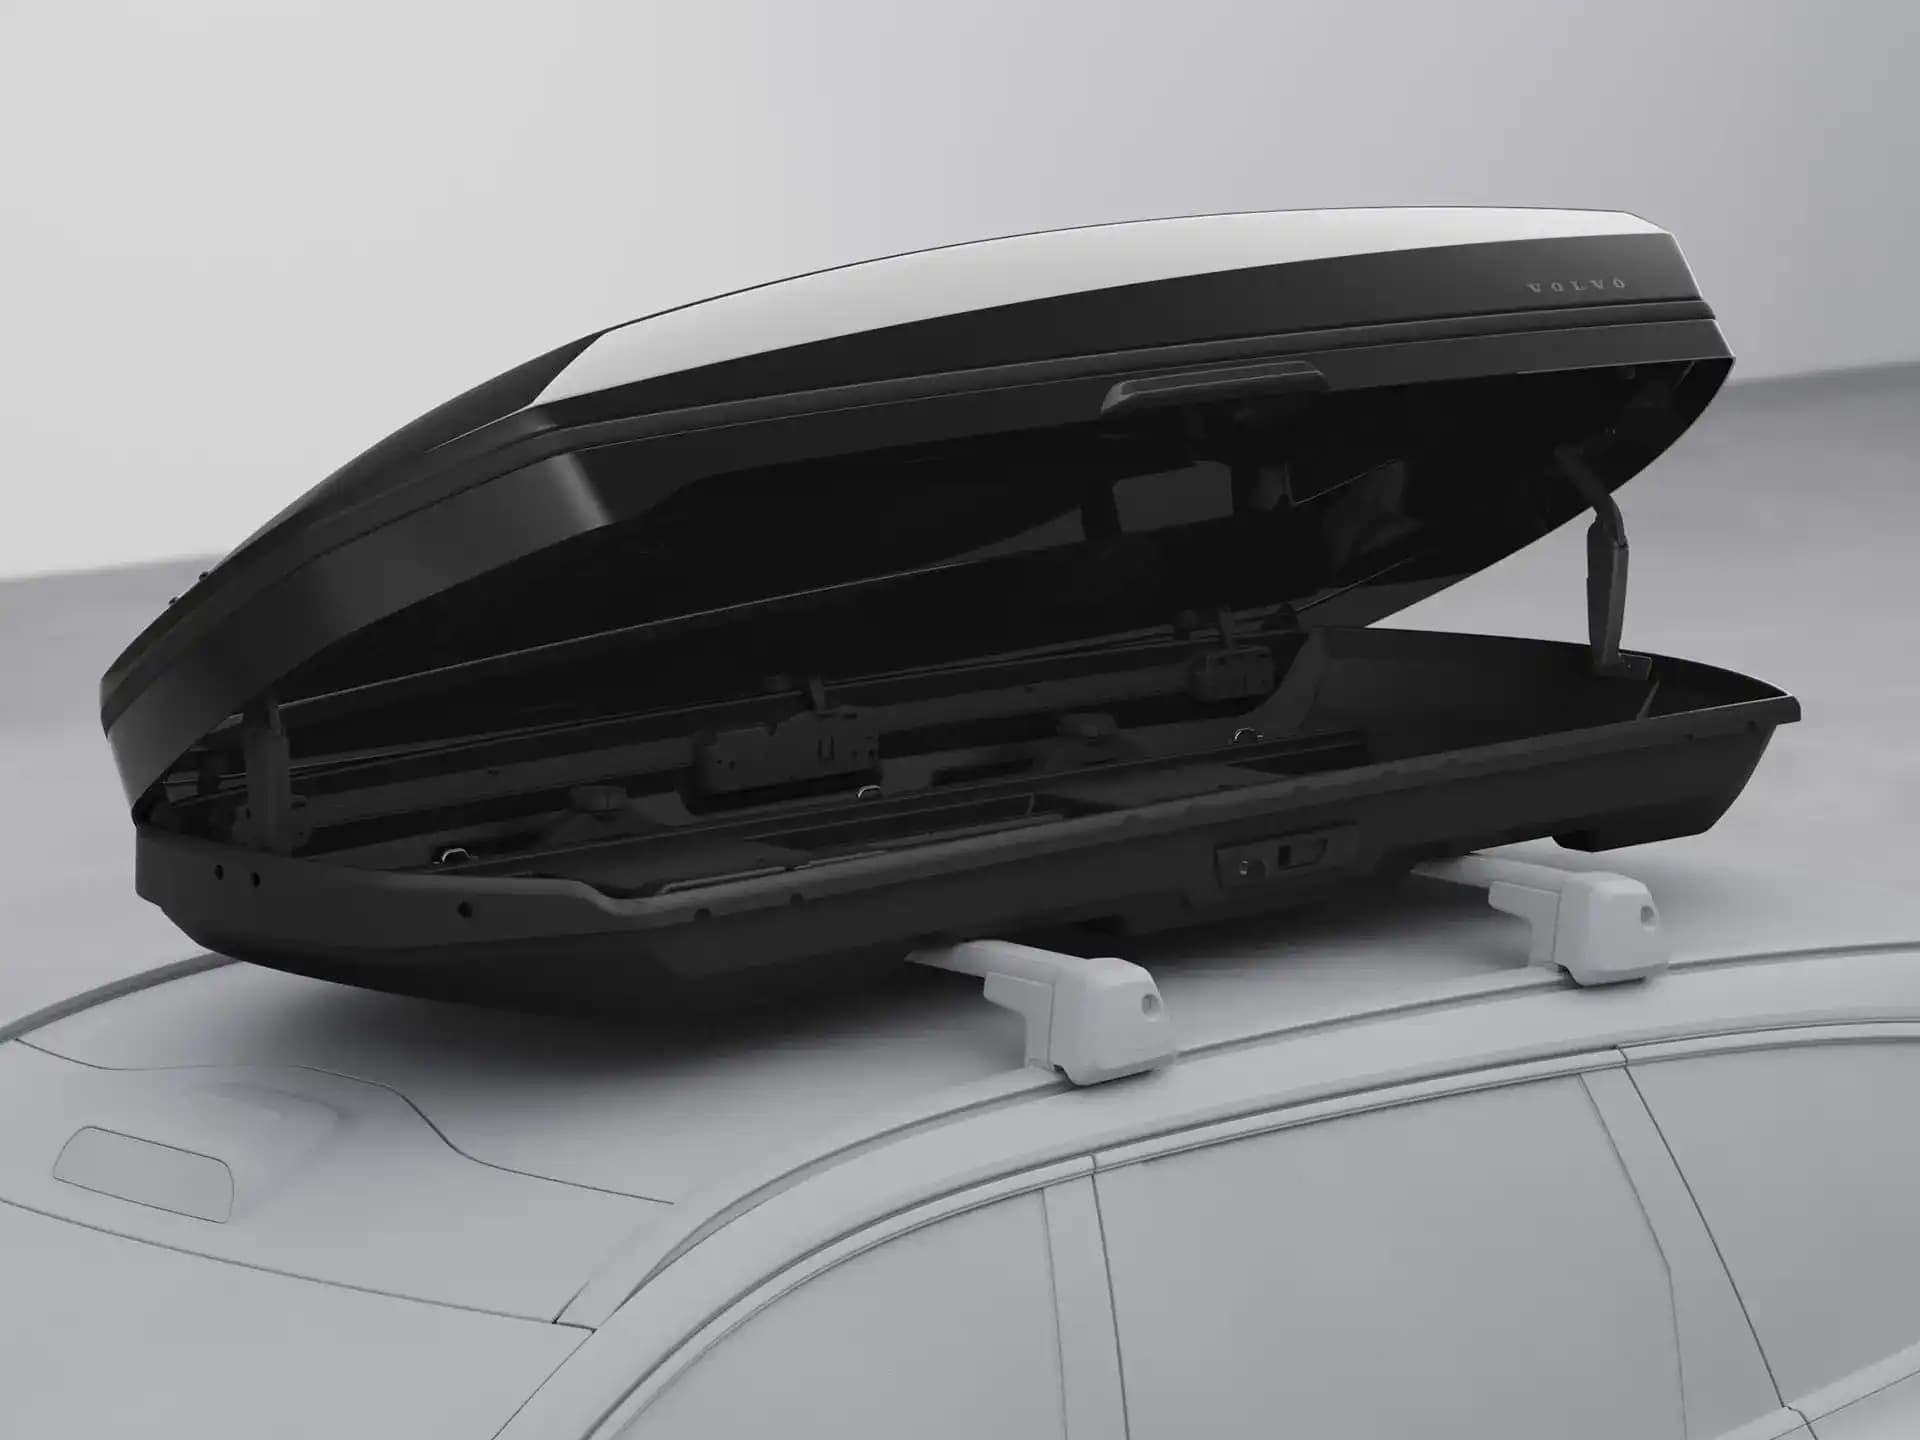 Eine Dachbox im Volvo Design.